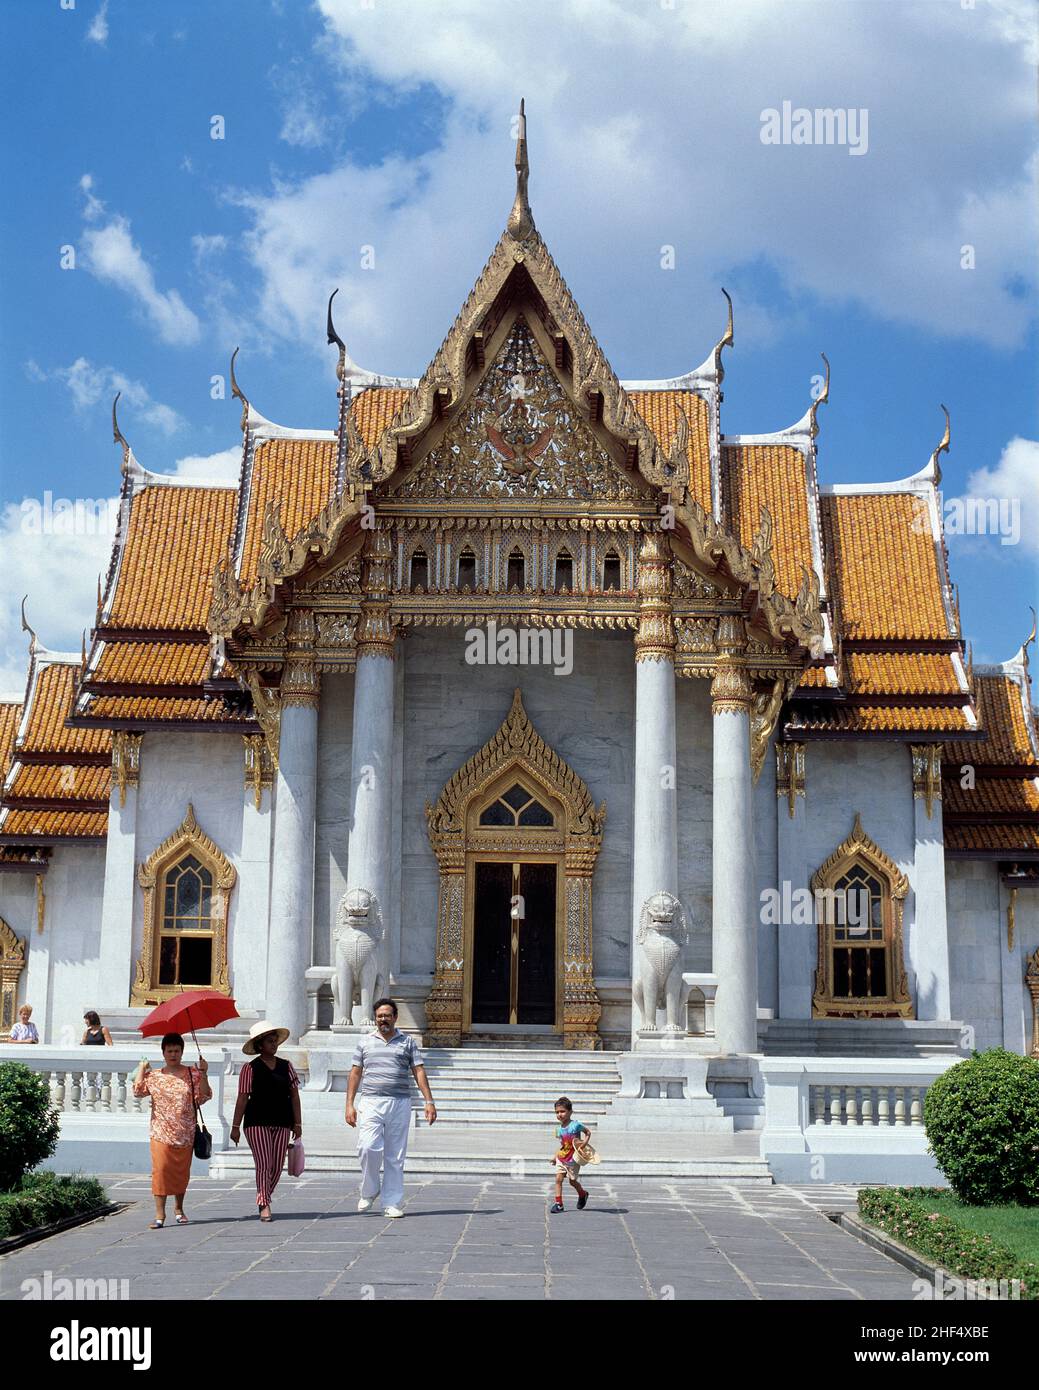 Thailand. Bangkok. Wat Benchamabophit Dusitvanaram. The Marble Temple. Stock Photo